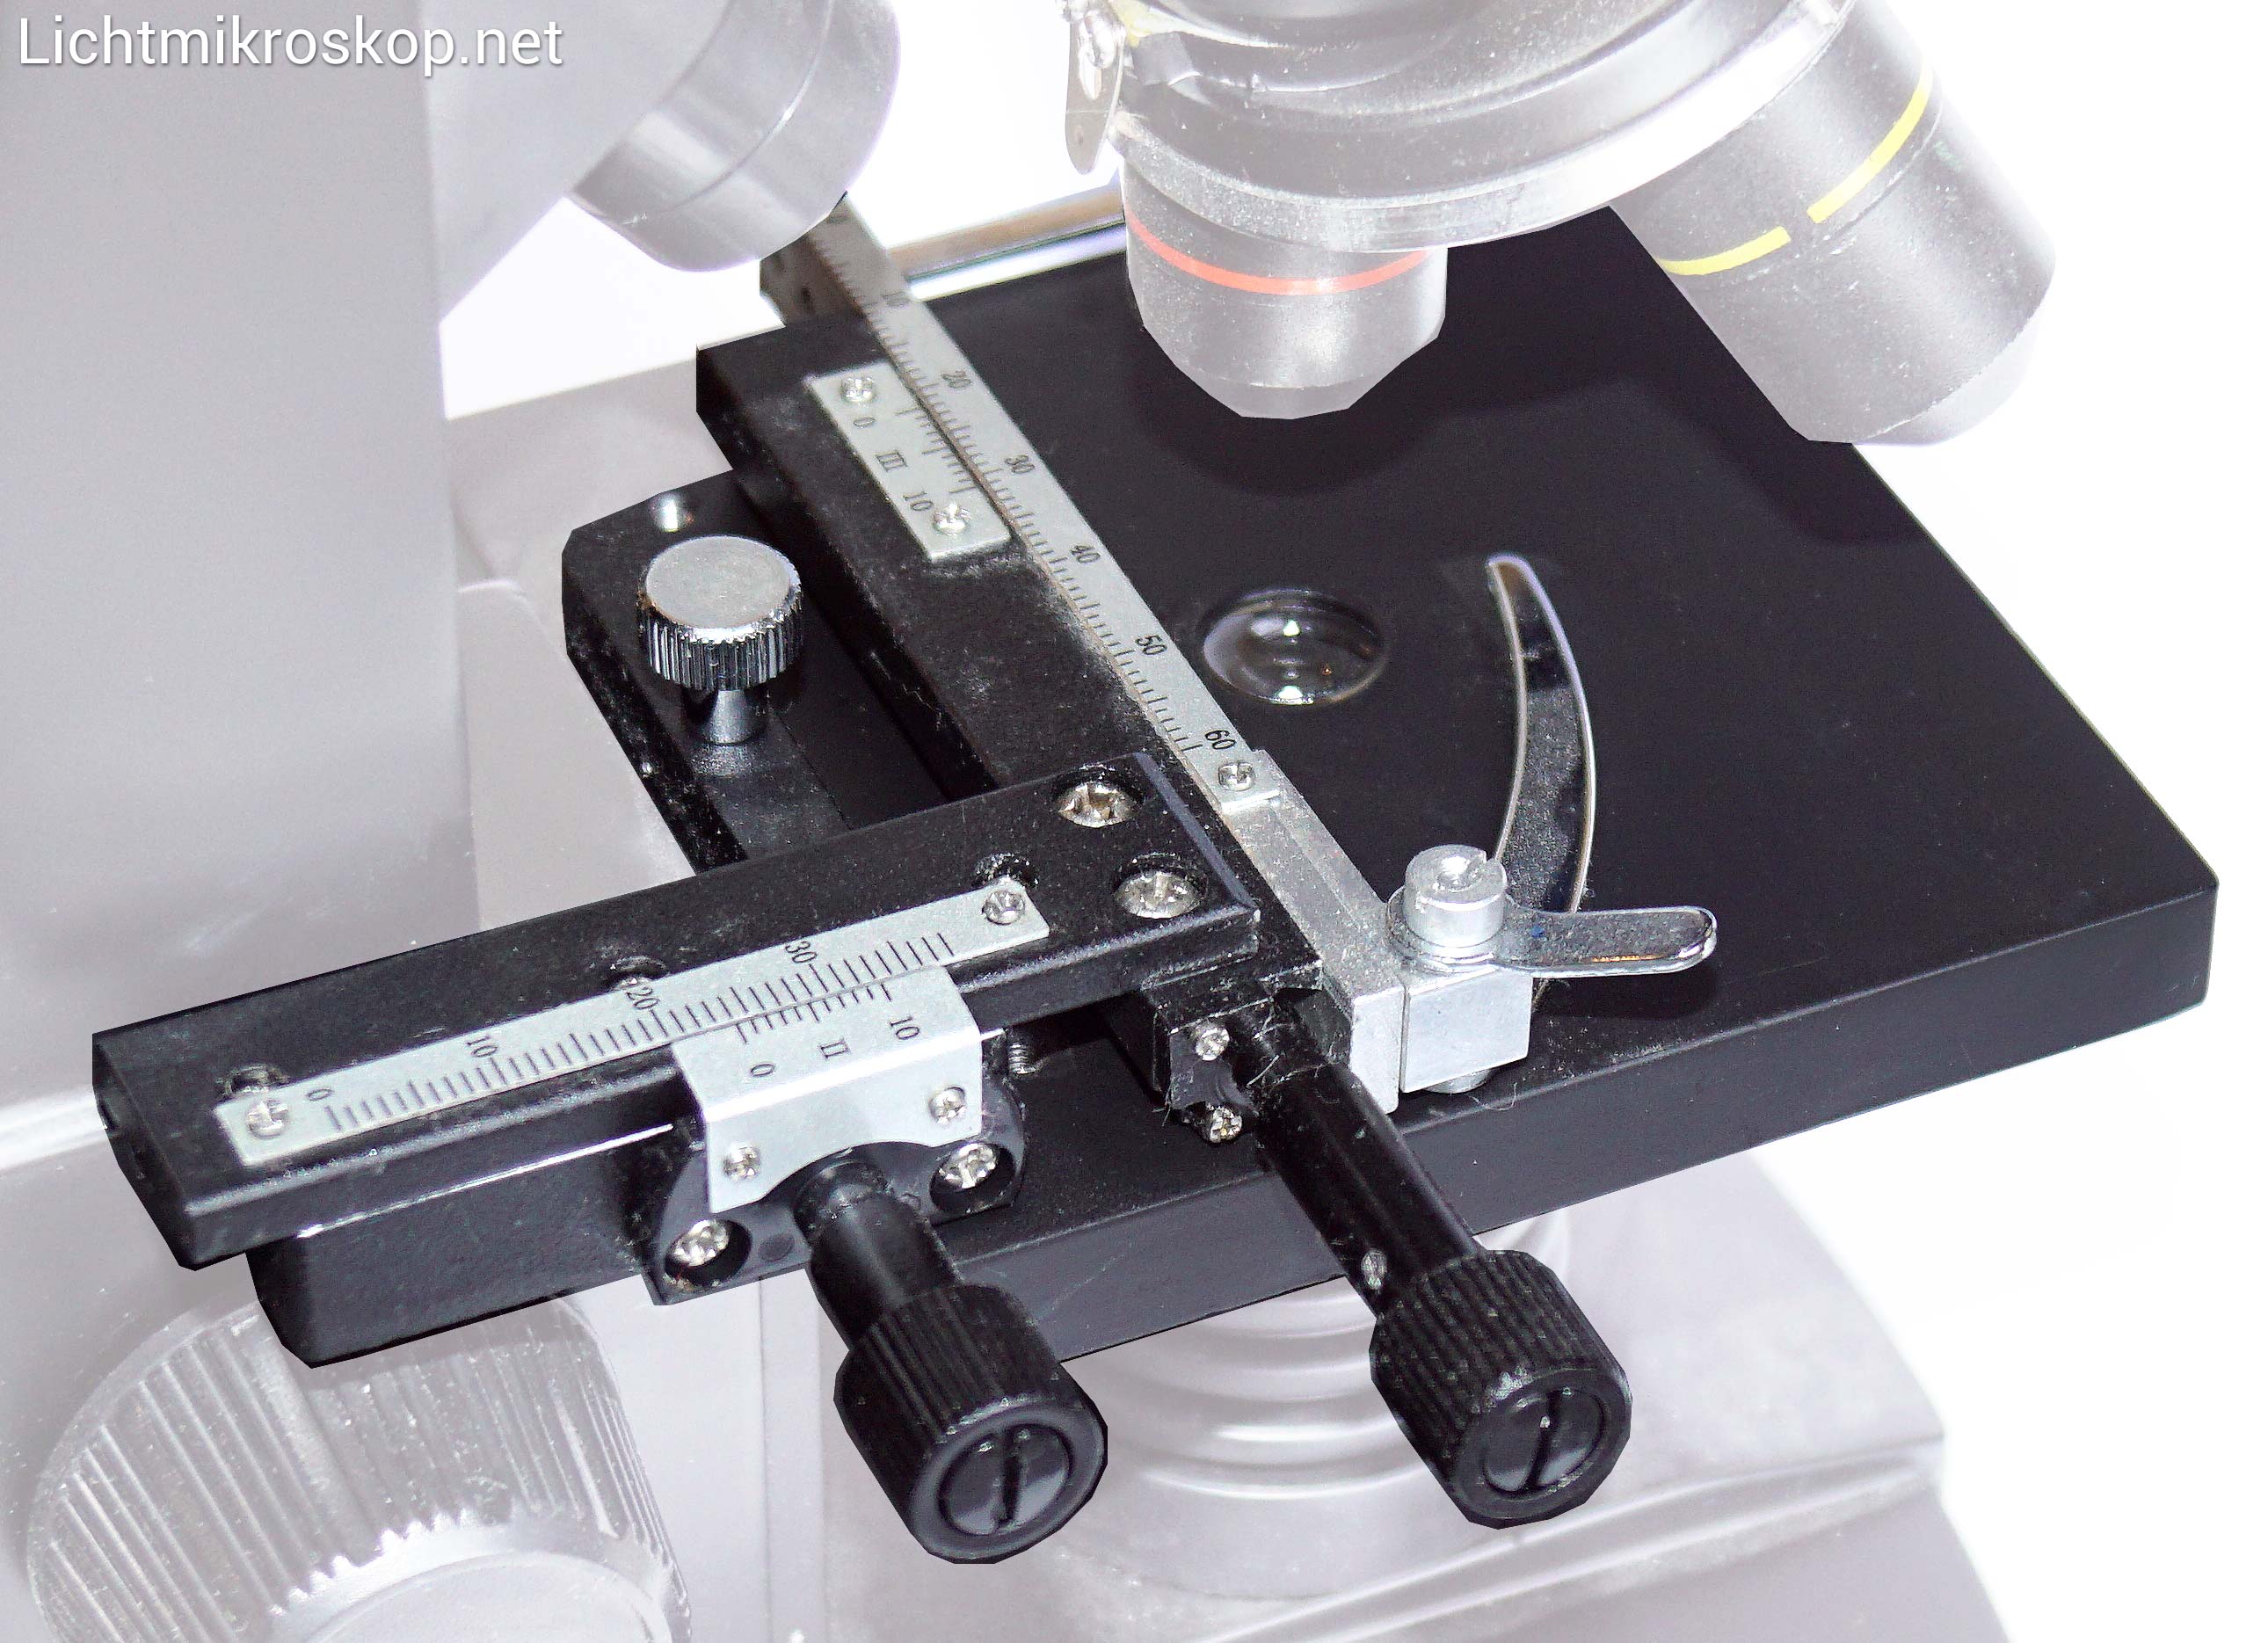 Aramox Mikroskop beweglicher Tisch professioneller aufsteckbarer mechanischer beweglicher X-Y Tischsattel mit Skala für Mikroskop 